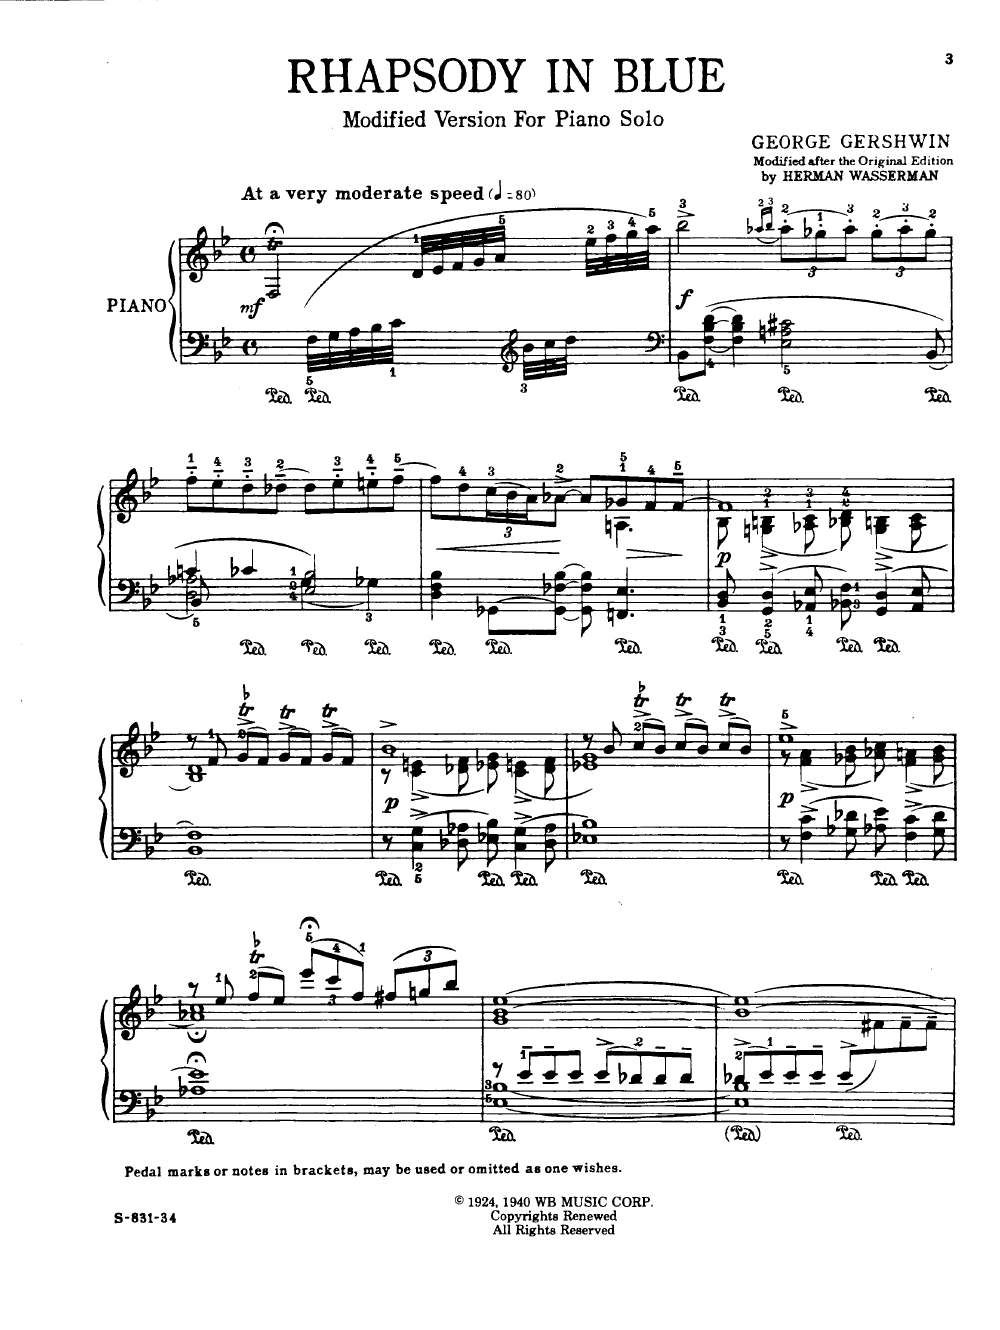 Rhapsody in Blue by George Gershwin/arr. Wasserman| J.W. Pepper Sheet Music